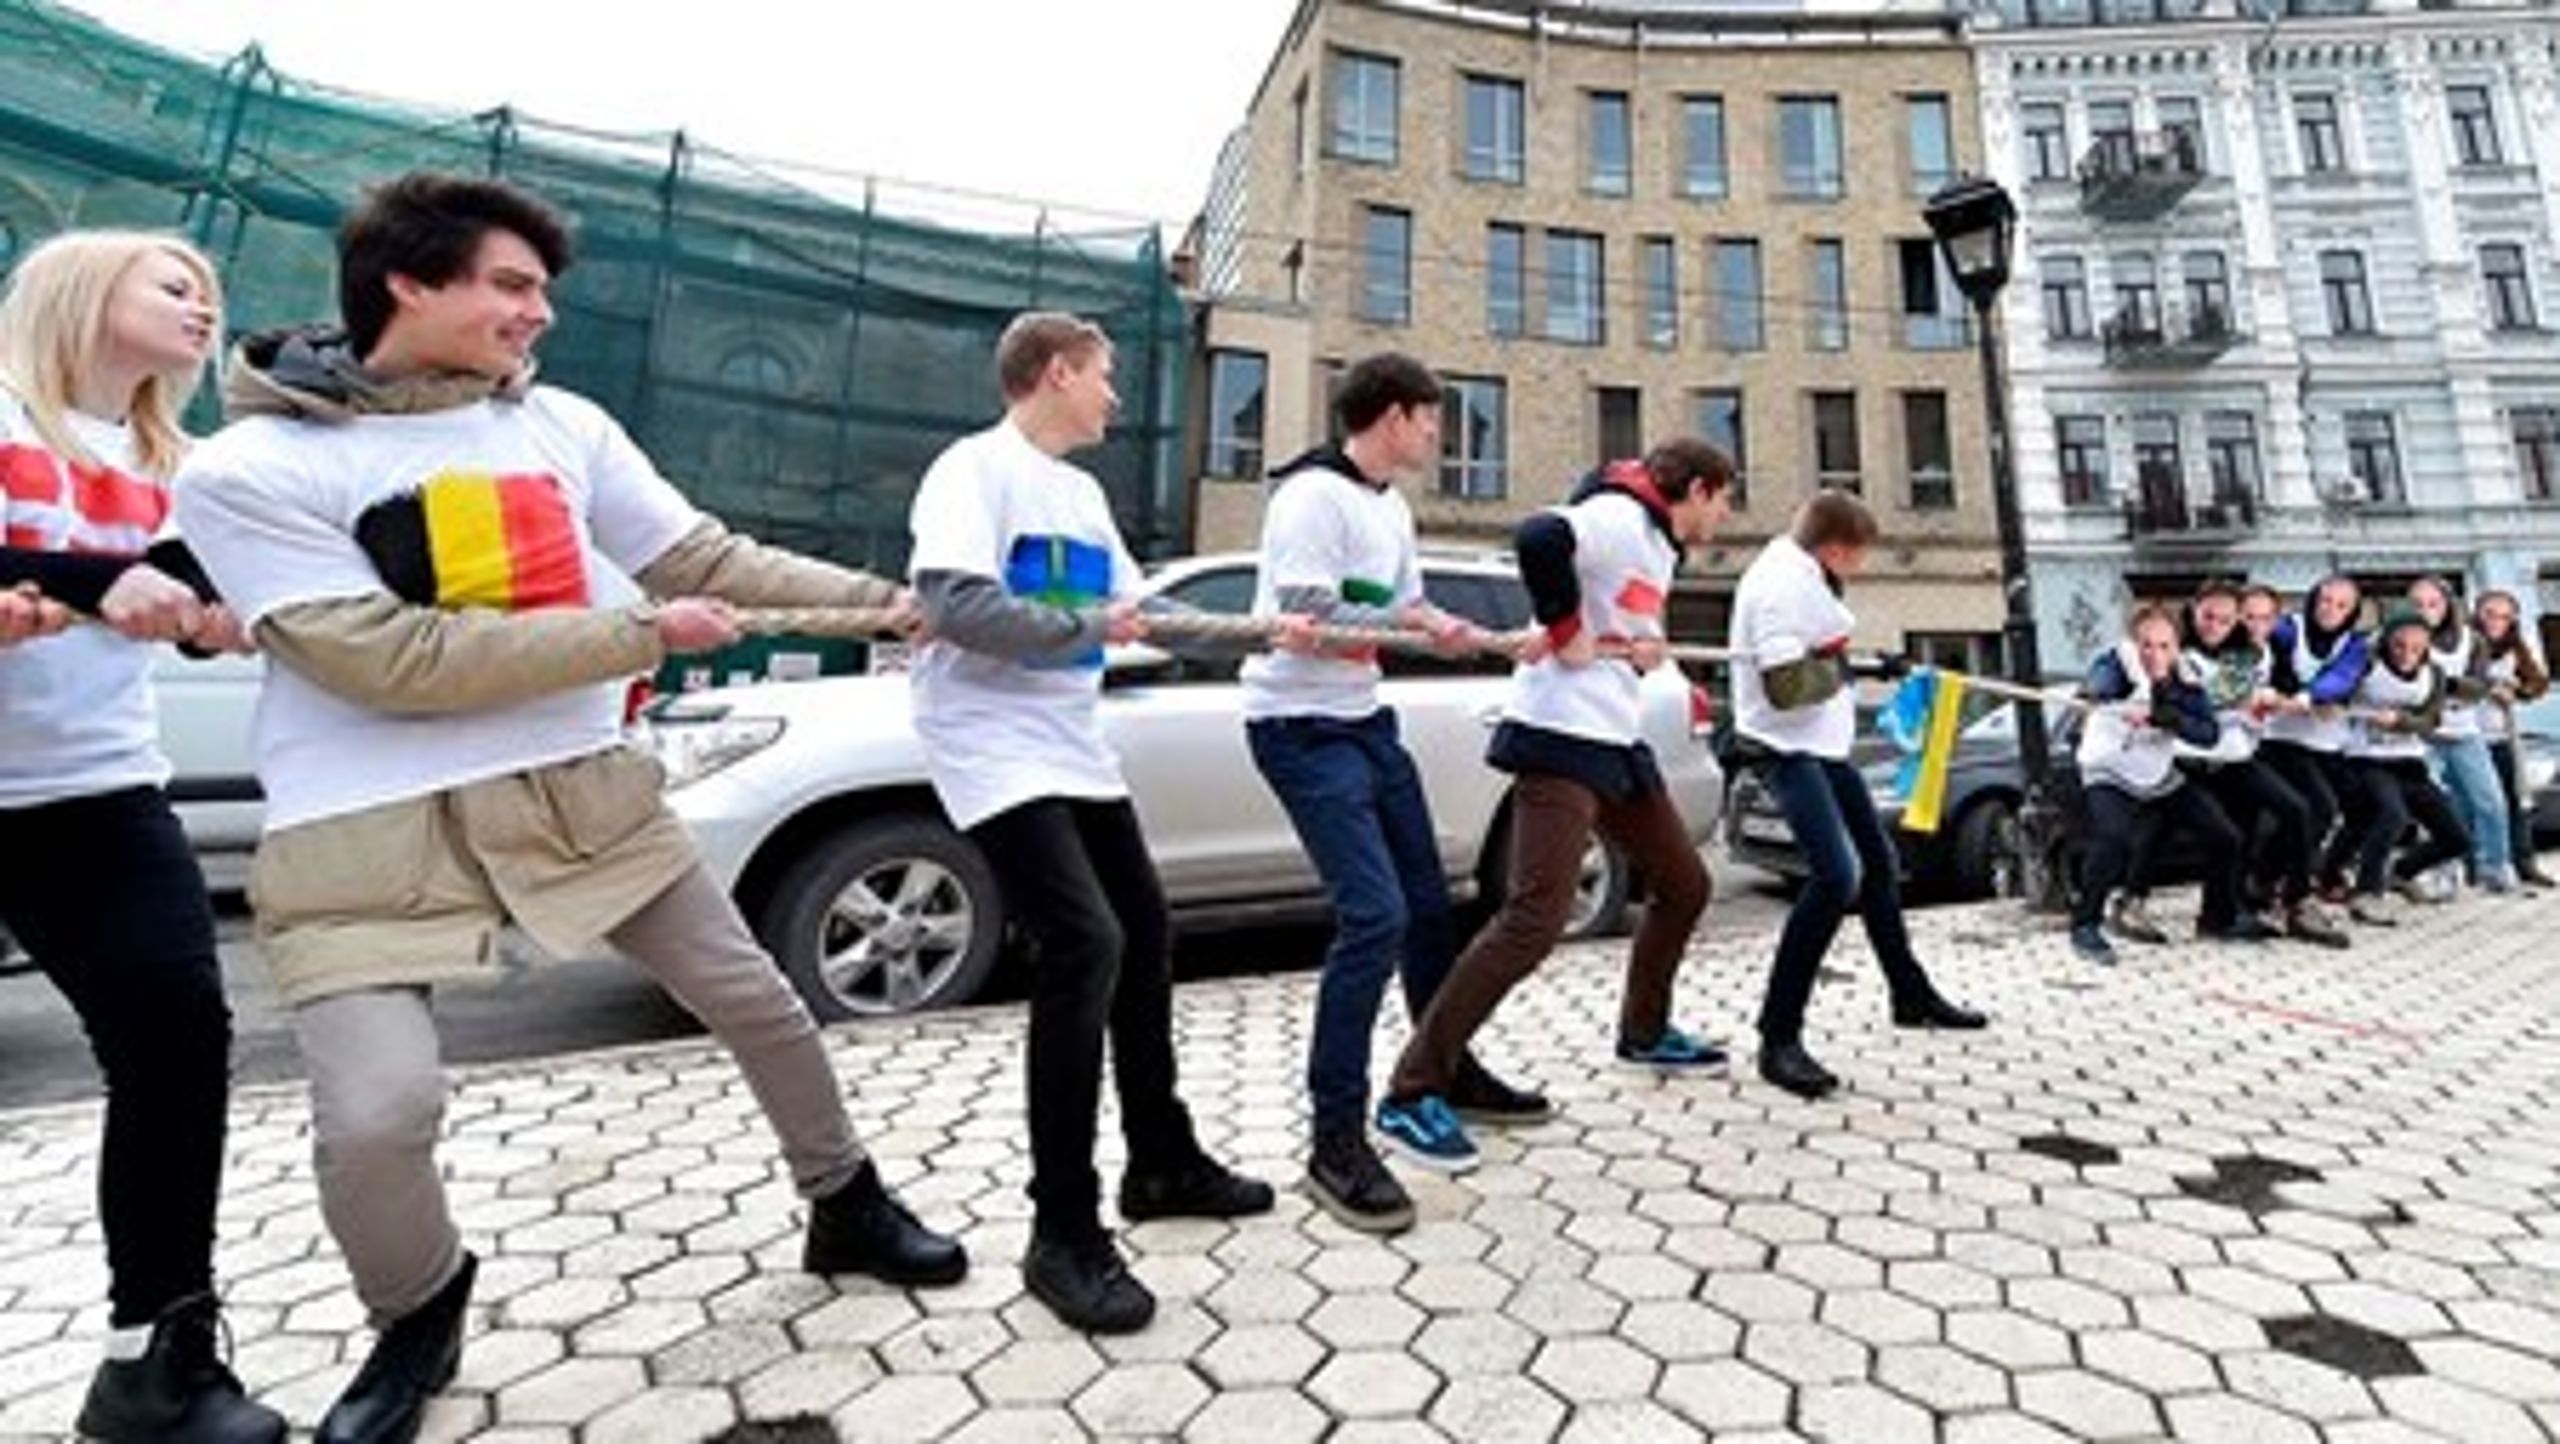 Ukrainske unge illustrerer tovtrækkeriet mellem EU og Rusland om deres land ved en demonstration ved den hollandske ambassade i Kiev. De håber på, at hollænderne&nbsp;vil støtte et&nbsp;ja til en vidtgående frihandels- og associeringsaftale mellem Ukraine og EU ved en folkeafstemning 6. april.